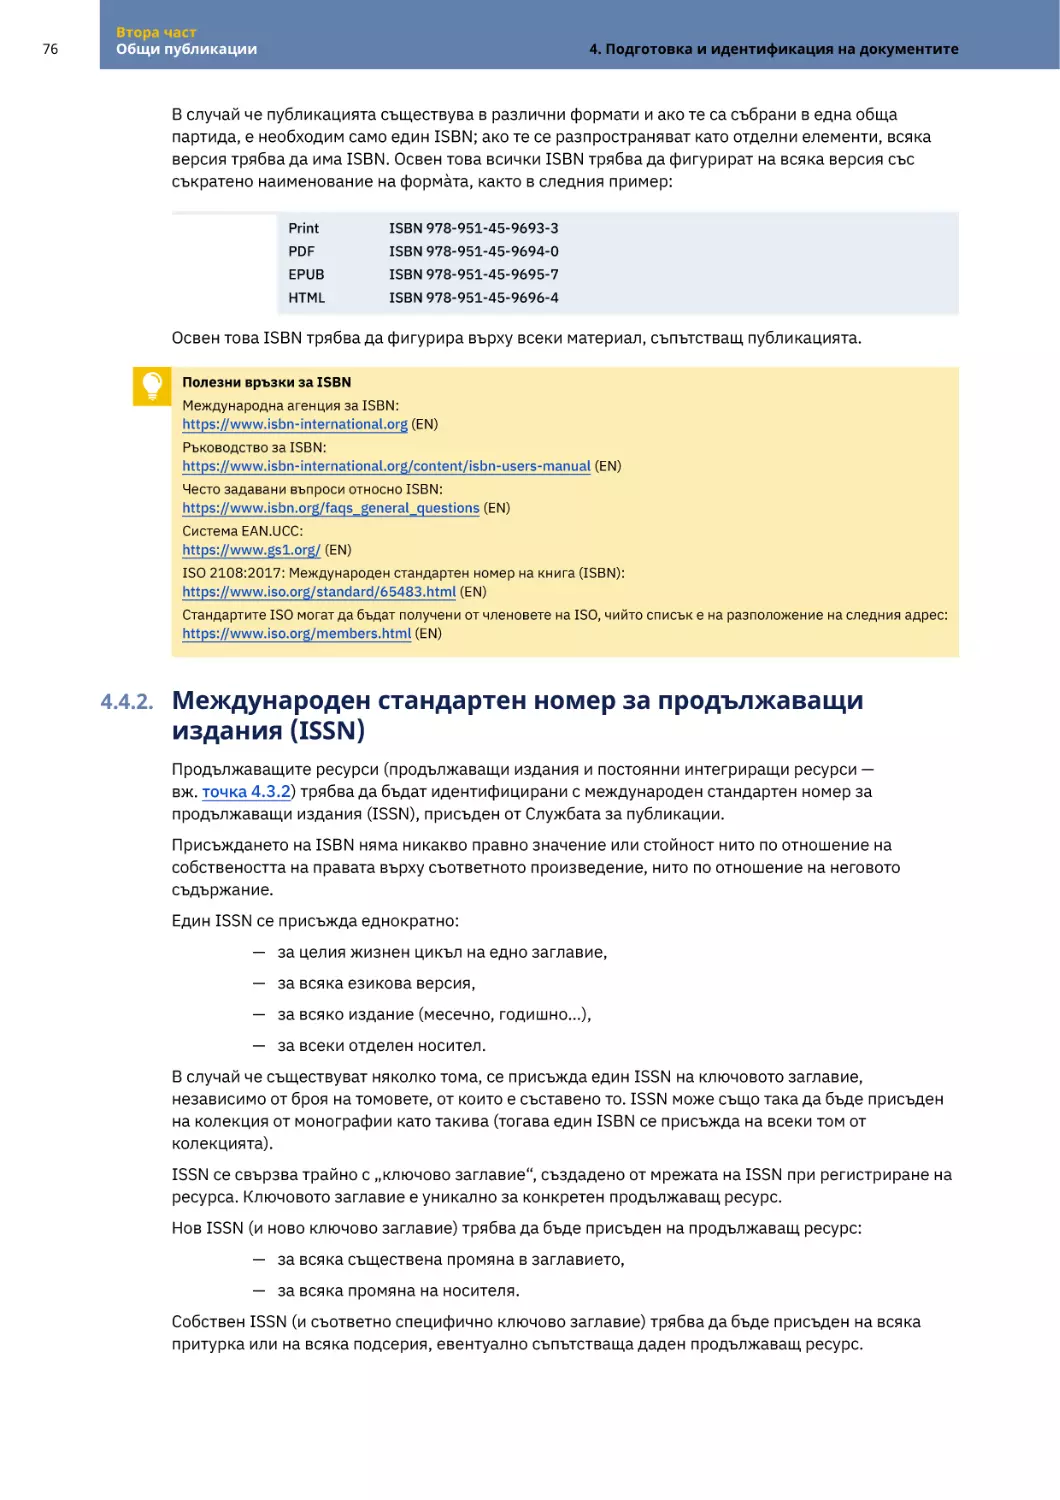 4.4.2. Международен стандартен номер за продължаващи издания (ISSN)